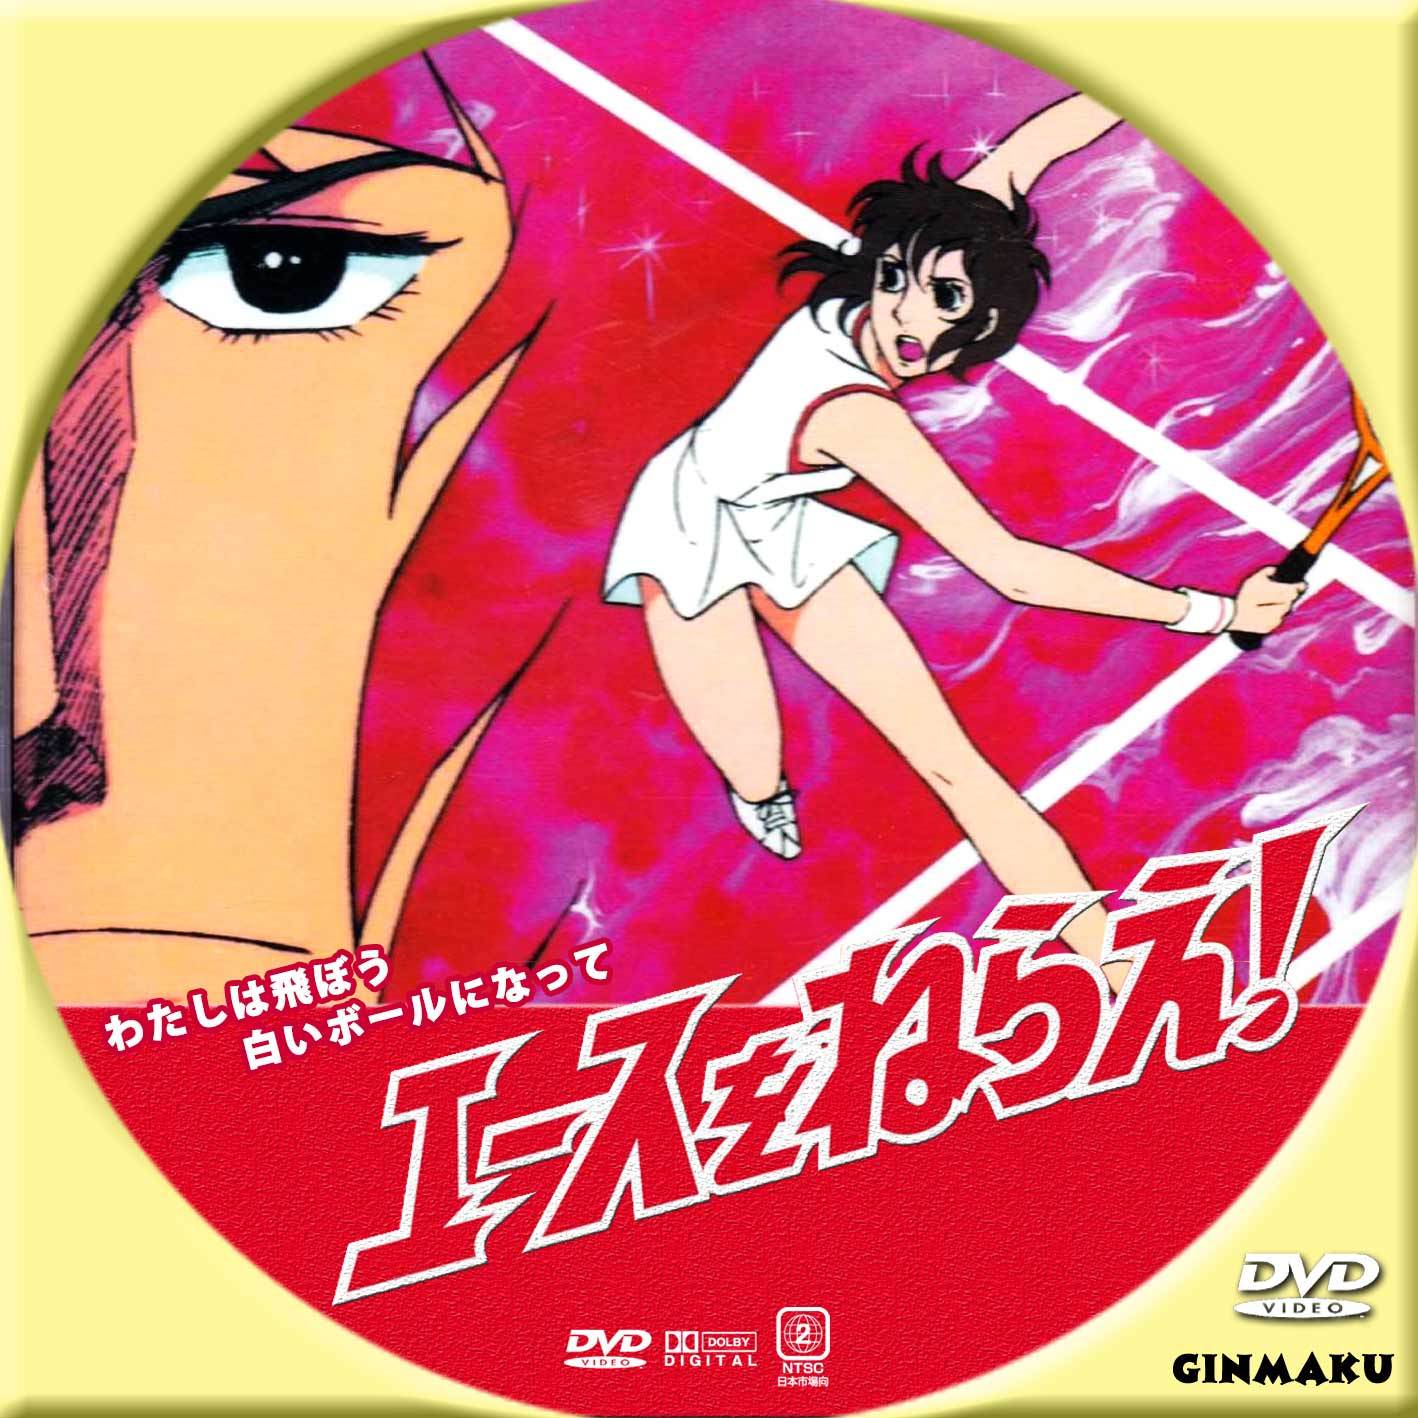 エースをねらえ Ginmaku Custom Dvd Blu Ray Labels Blog版 映画 洋画 邦画 ドラマ